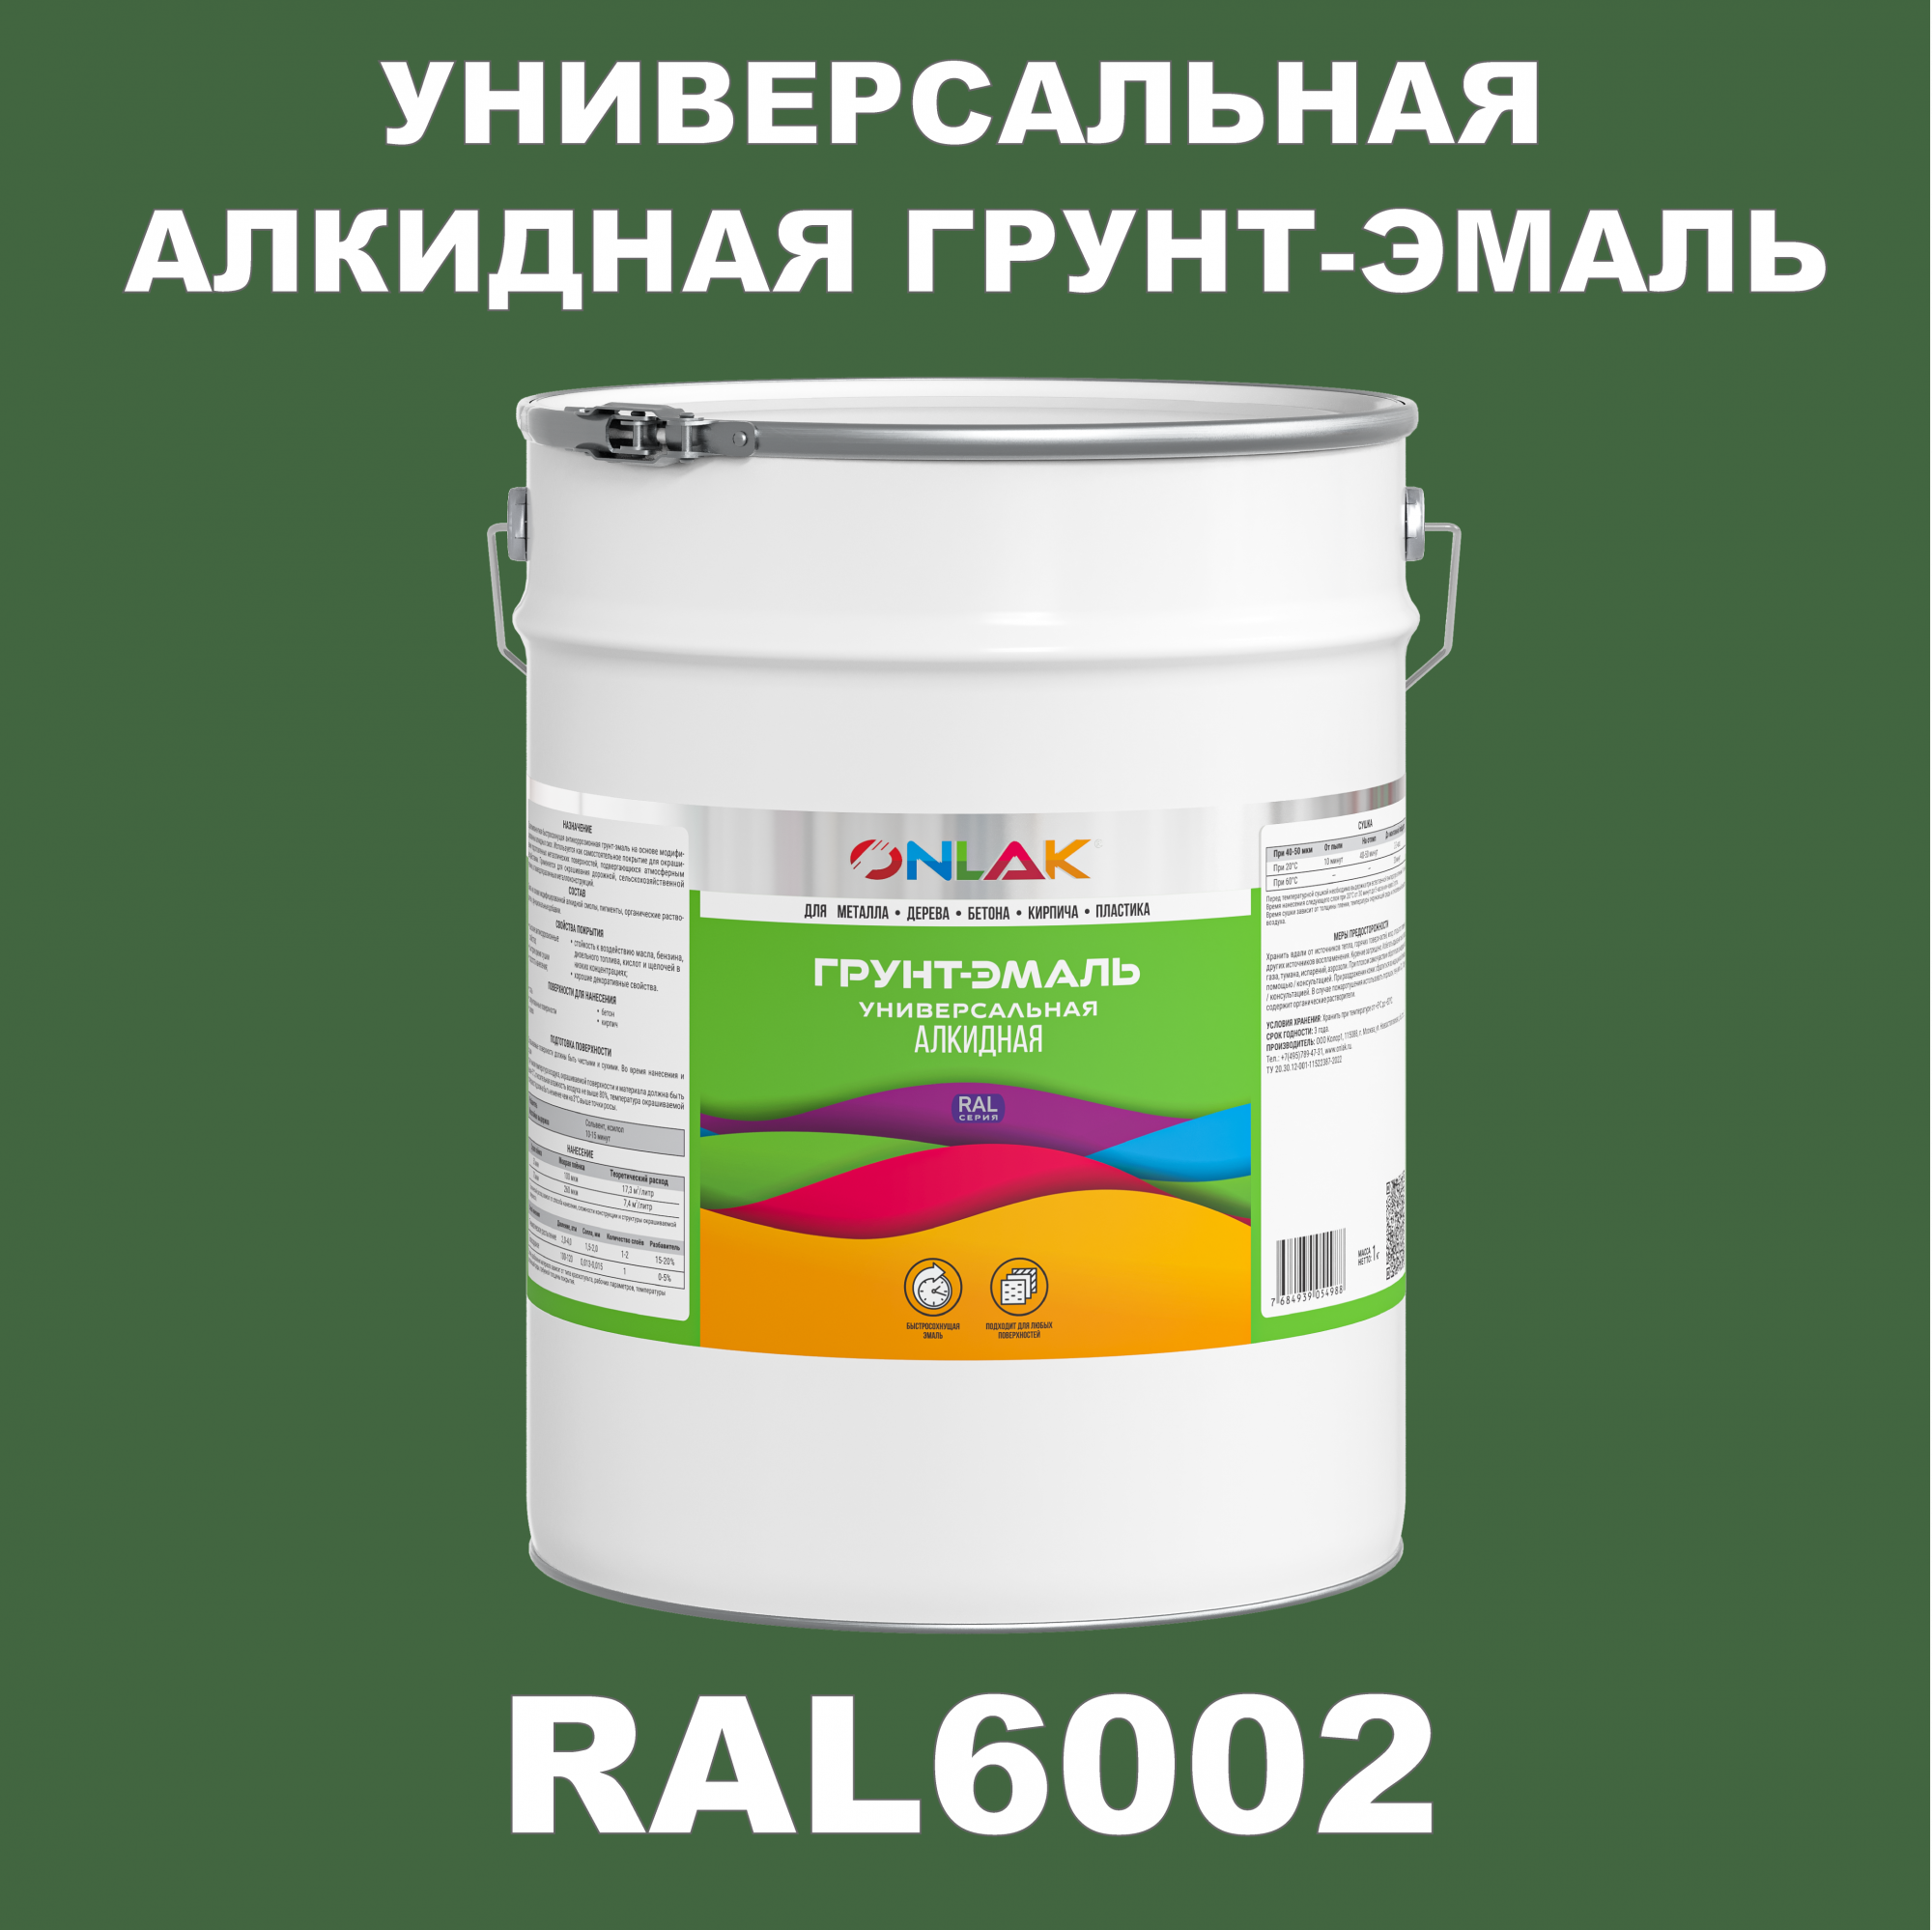 Грунт-эмаль ONLAK 1К RAL6002 антикоррозионная алкидная по металлу по ржавчине 20 кг грунт эмаль yollo по ржавчине алкидная зеленая 0 9 кг